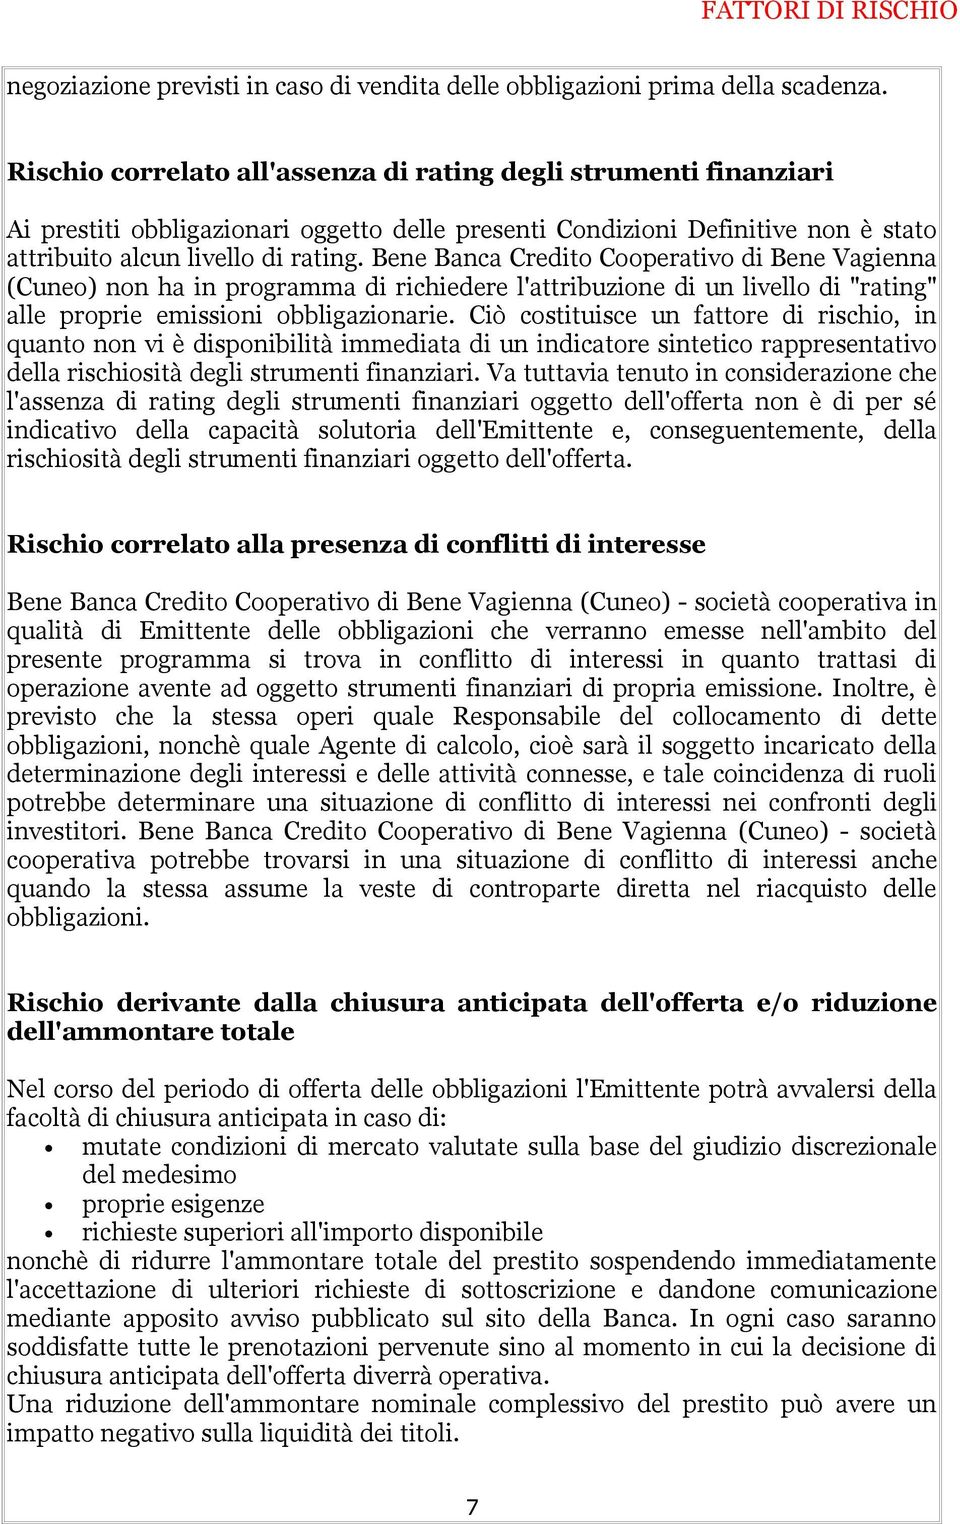 Bene Banca Credito Cooperativo di Bene Vagienna (Cuneo) non ha in programma di richiedere l'attribuzione di un livello di "rating" alle proprie emissioni obbligazionarie.